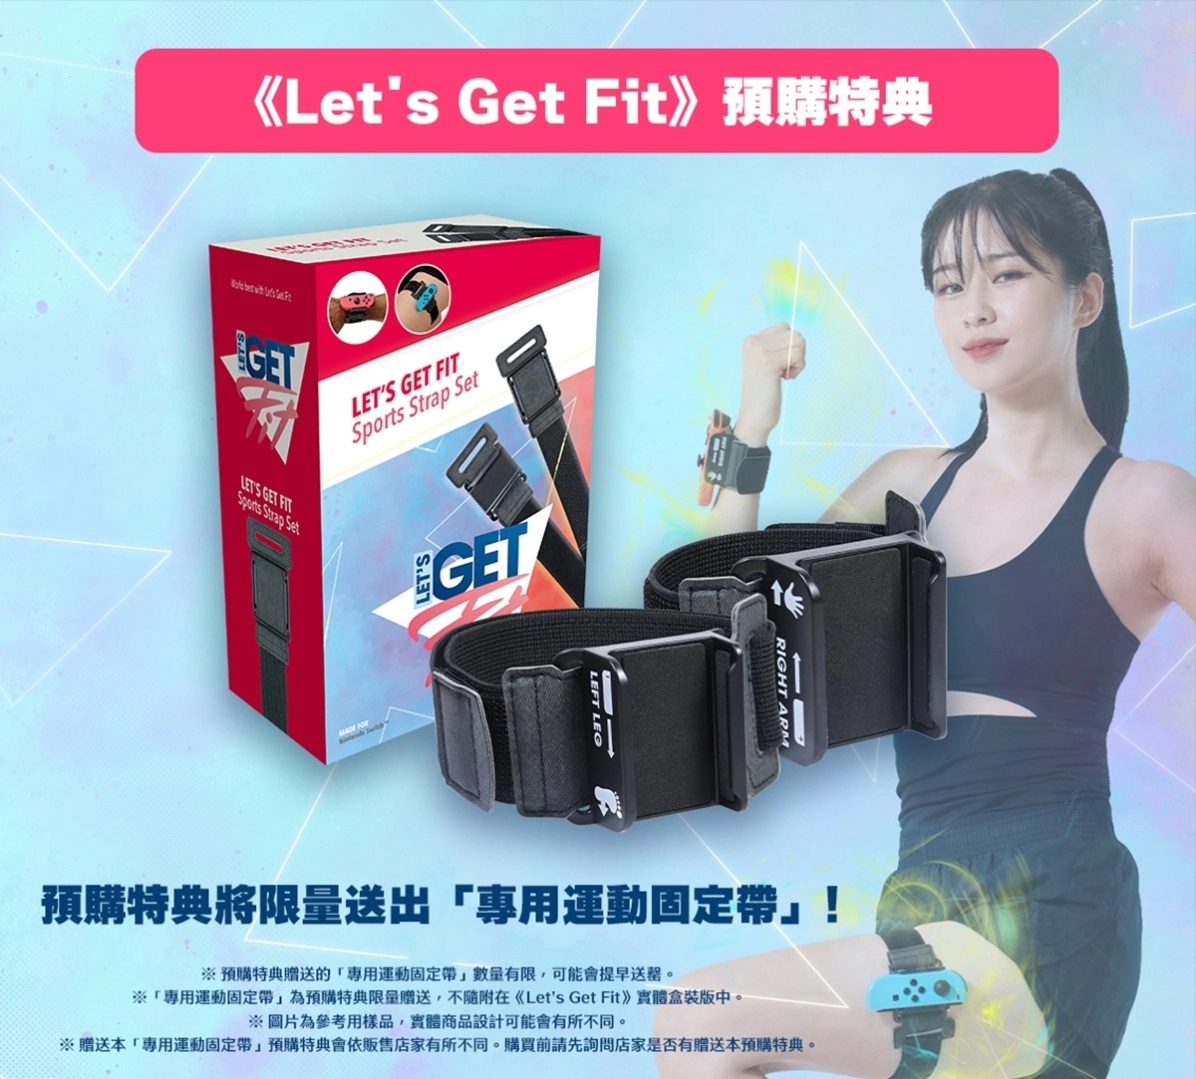 标准健身&训练游戏《Let's Get Fit》中文版11月30日上市！现正预购中，公开预购特典相关资讯！